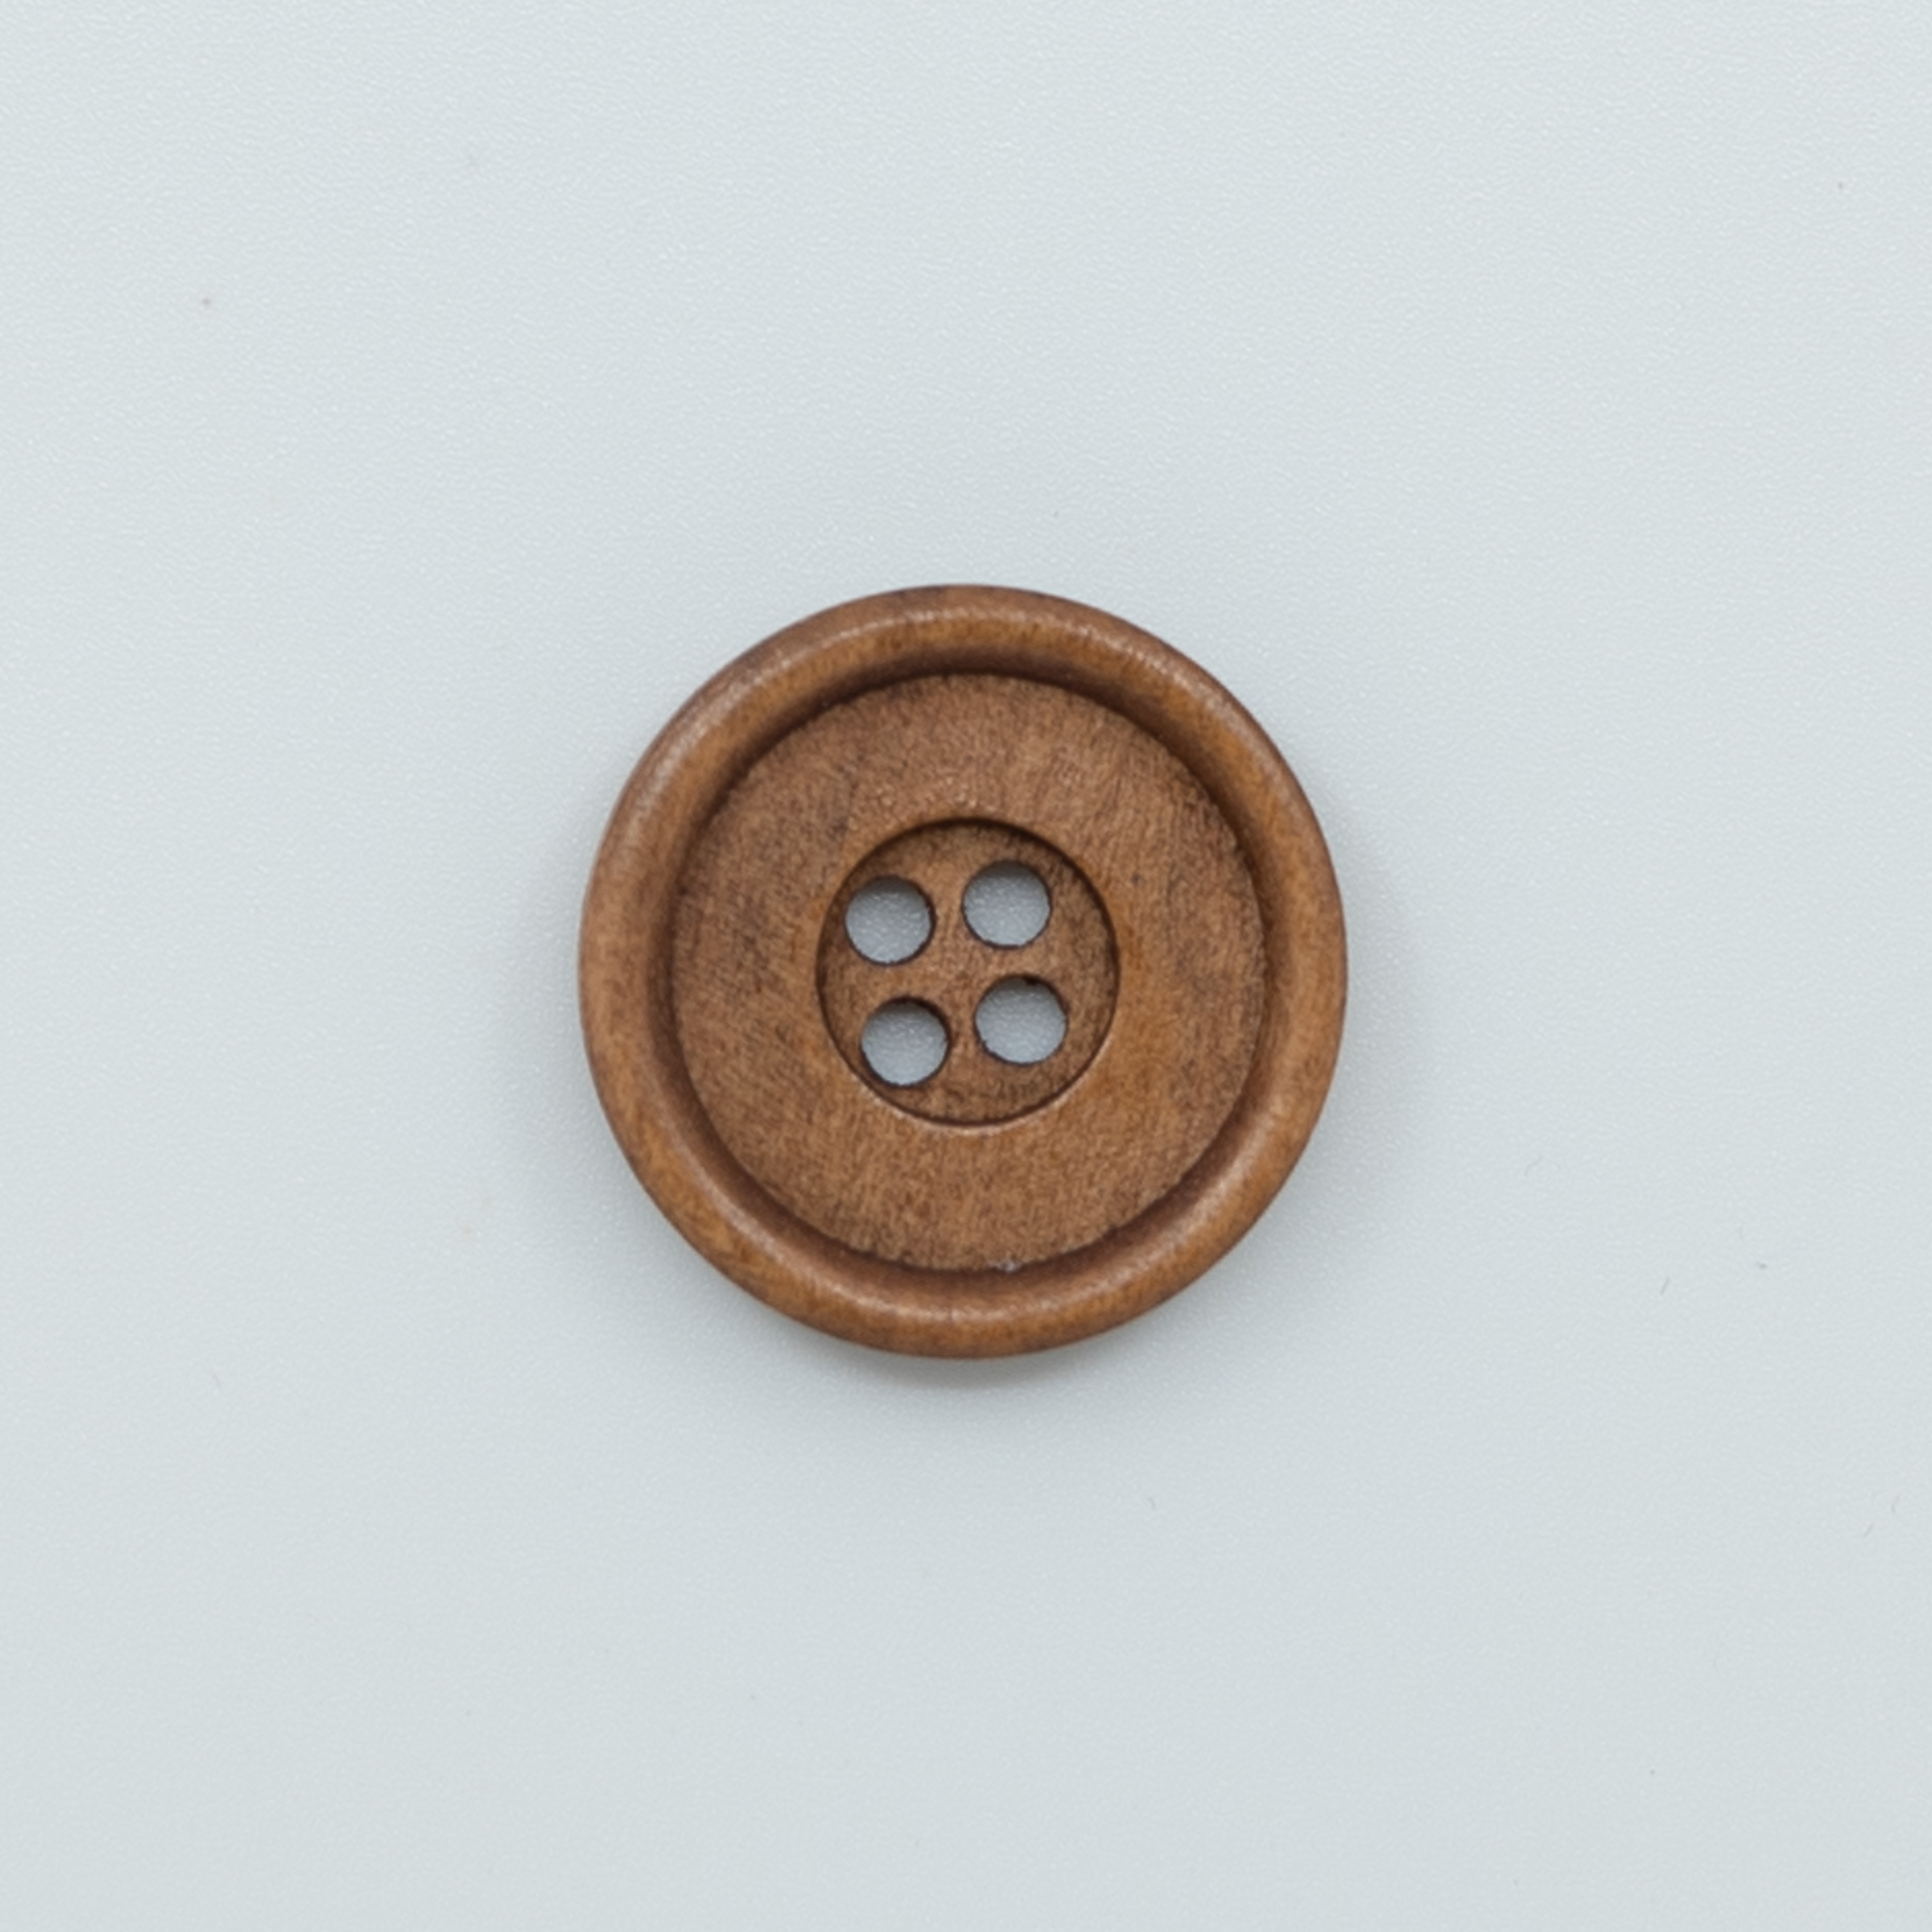  - Big wood button | Dark wood button | knitting - by HipKnitShop - 04/05/2020